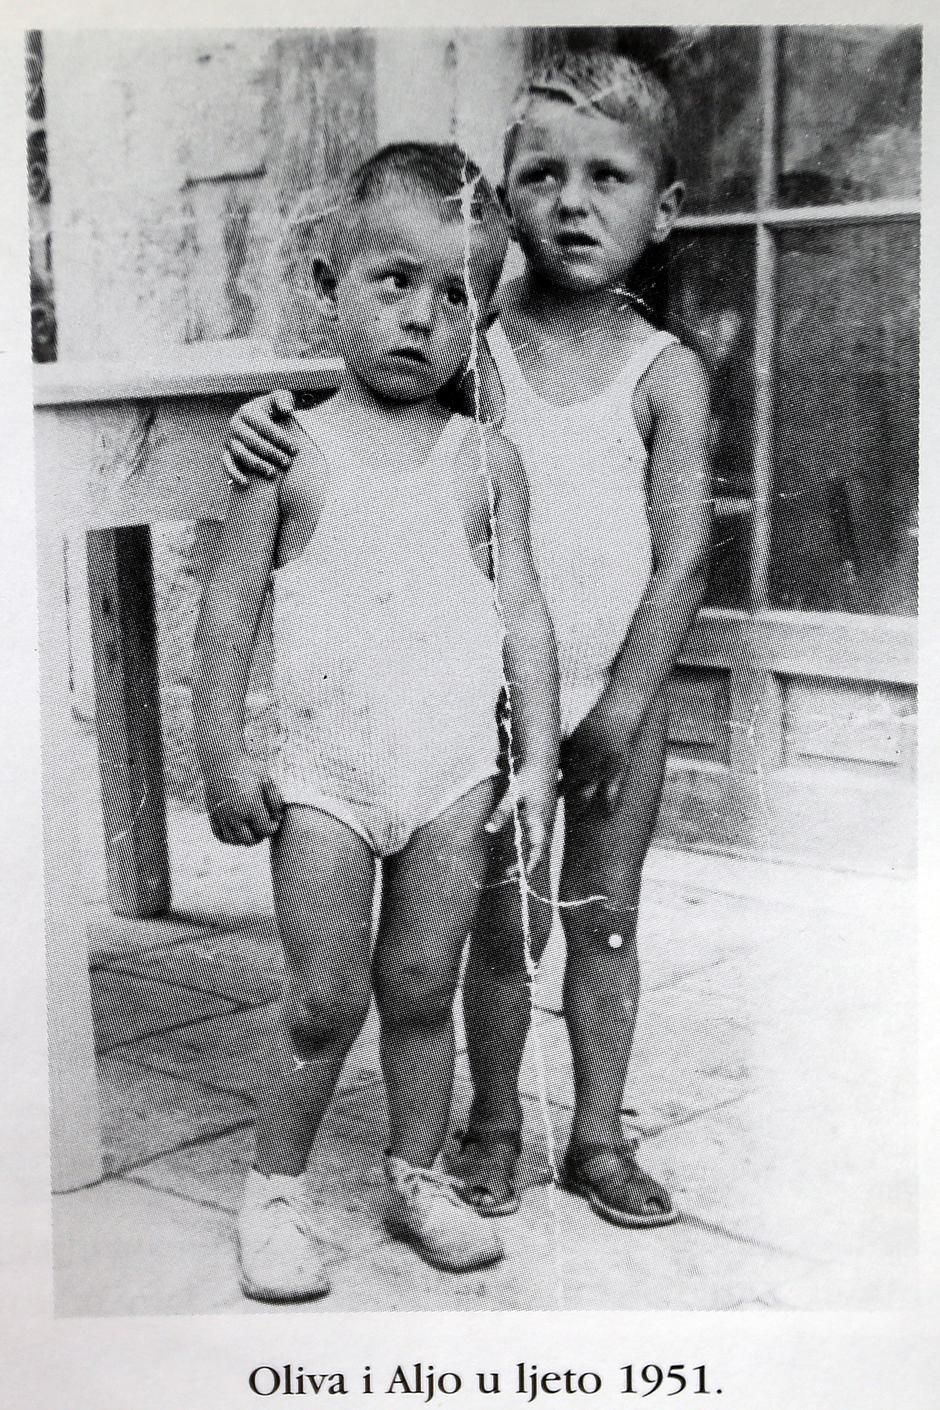 Oliver i stariji brat Aljoša 1951. godine | Author: Iz biografije 'Južnjačka utjeha' Zlatka Galla